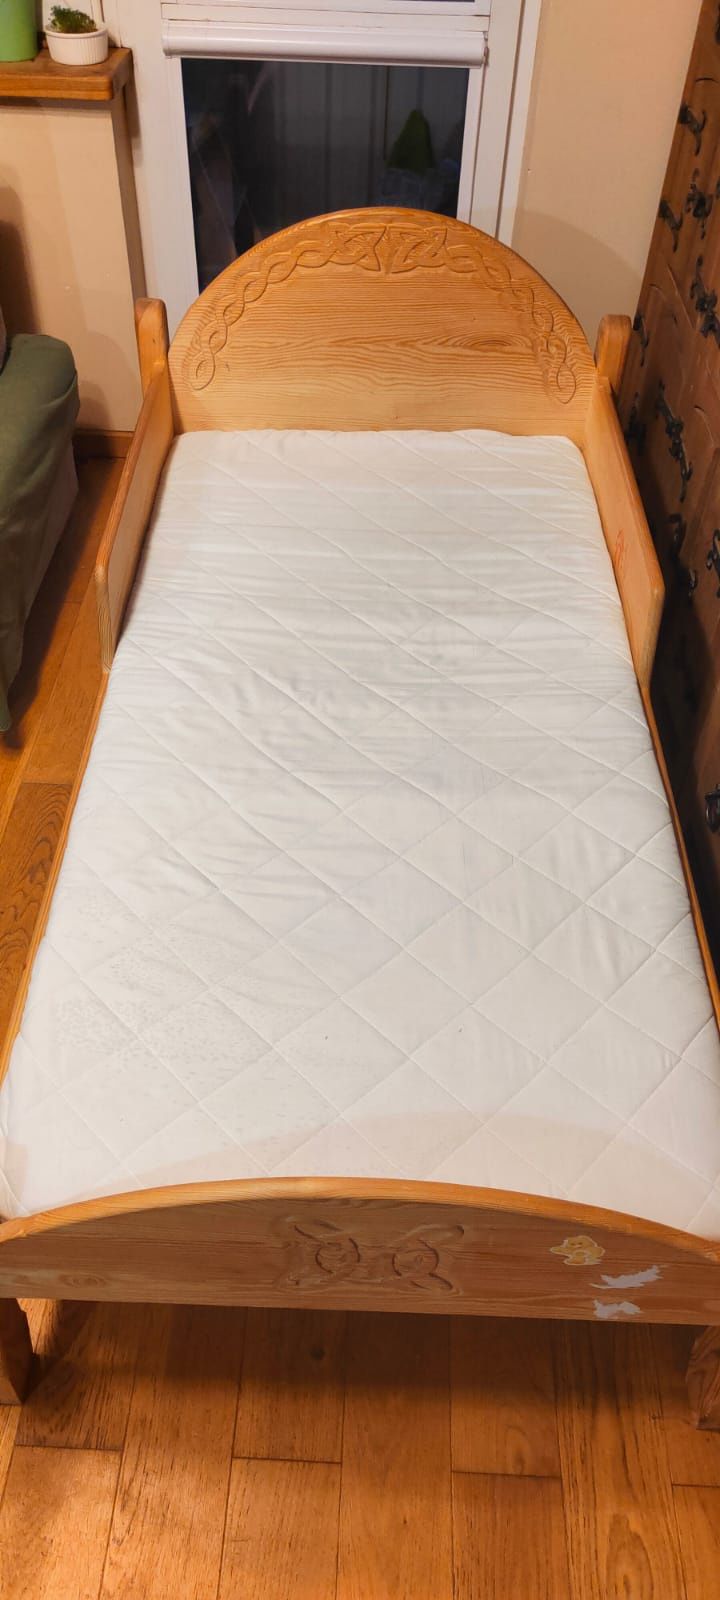 Łóżko sosnowe dla dziecka 160*80cm ręcznie zrobione + materac